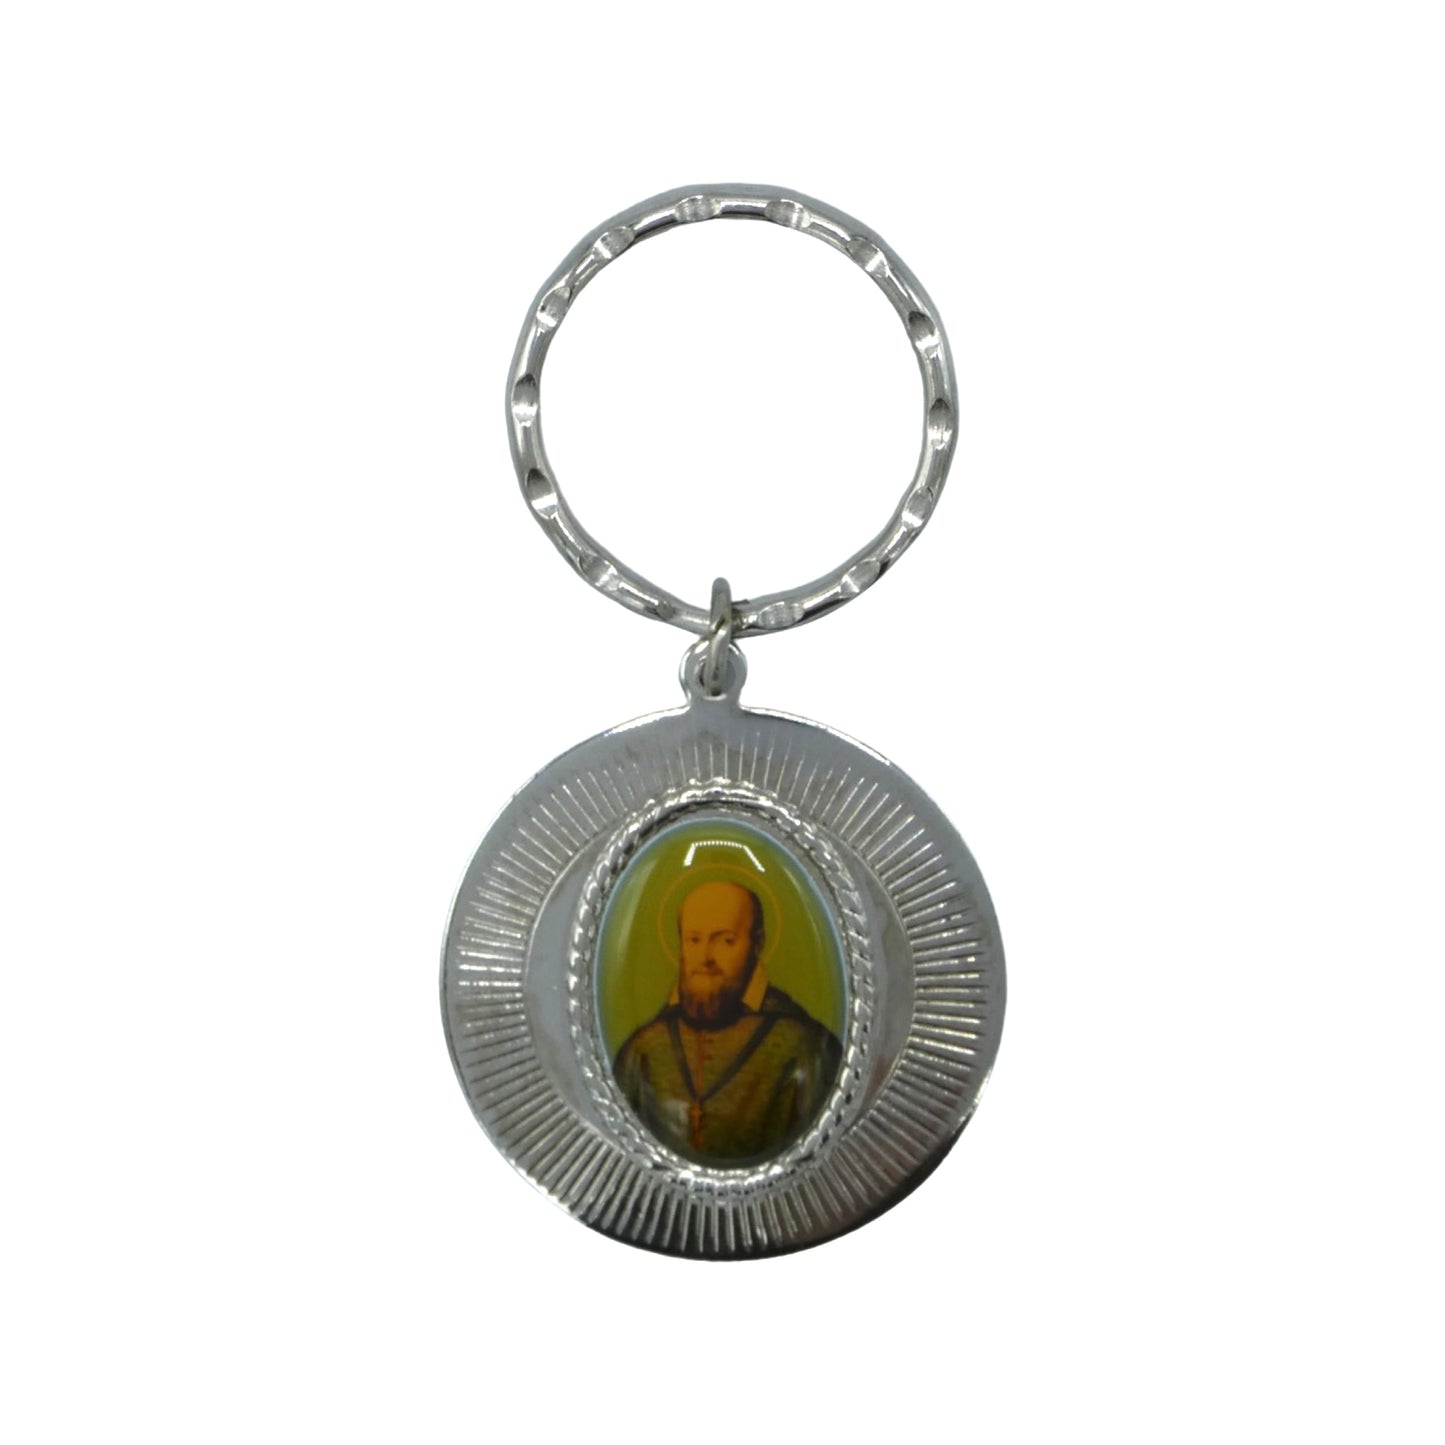 St. Francis de Sales Keychain